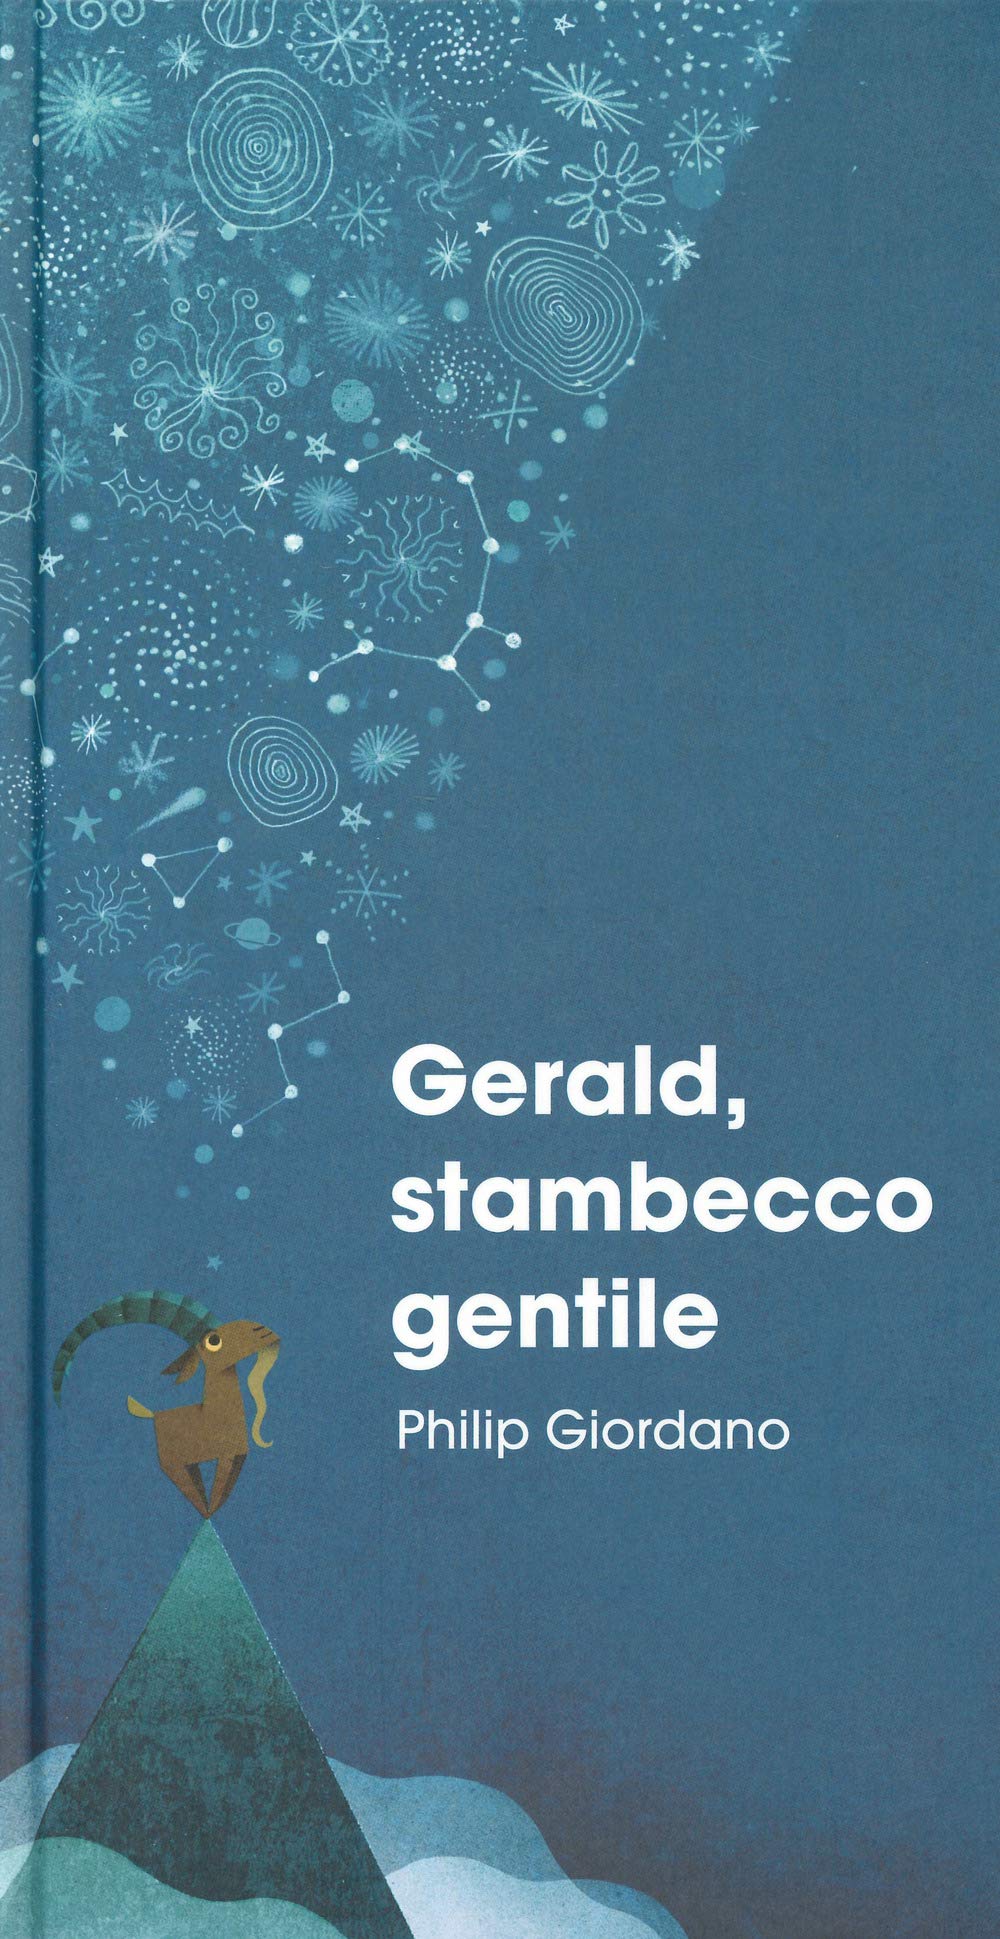 Giordano P. (2019). Gerald, stambecco gentile. Lapis Editore